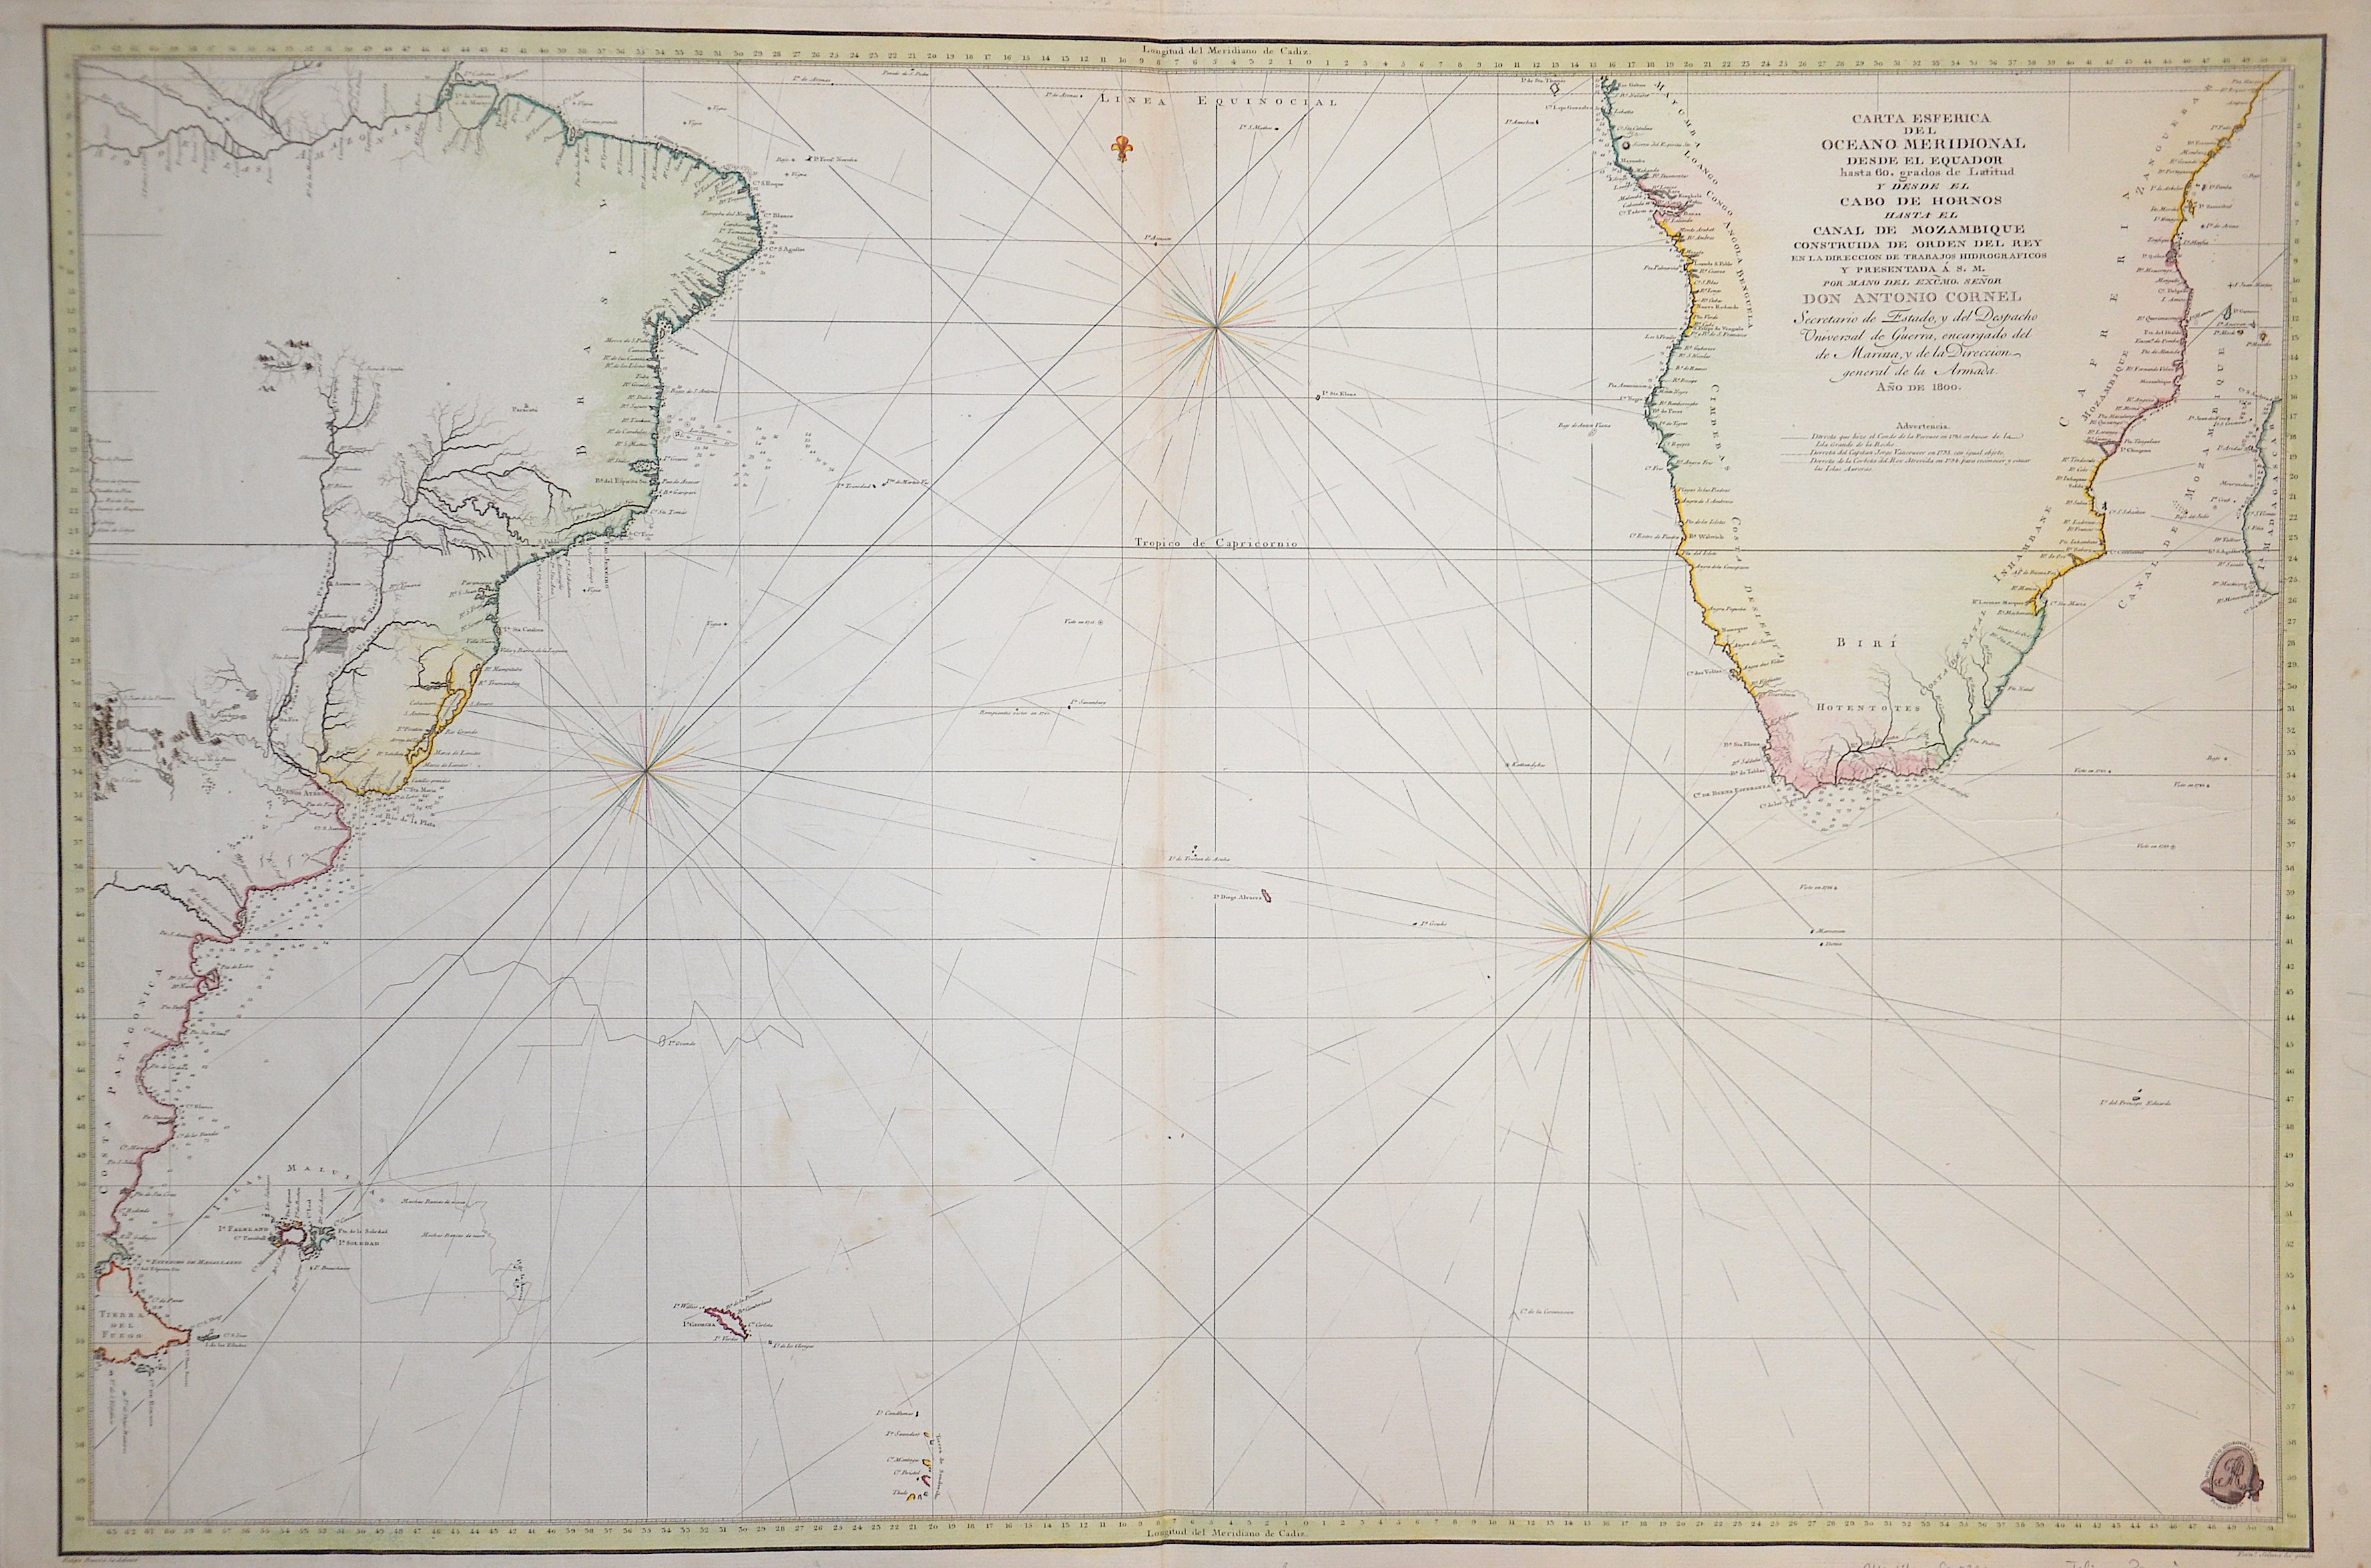 Bauza Felipe Carta Esferica del Oceeano Meridional desde el Eyuador…Cabo de Hornos… Canal de Mozambique…